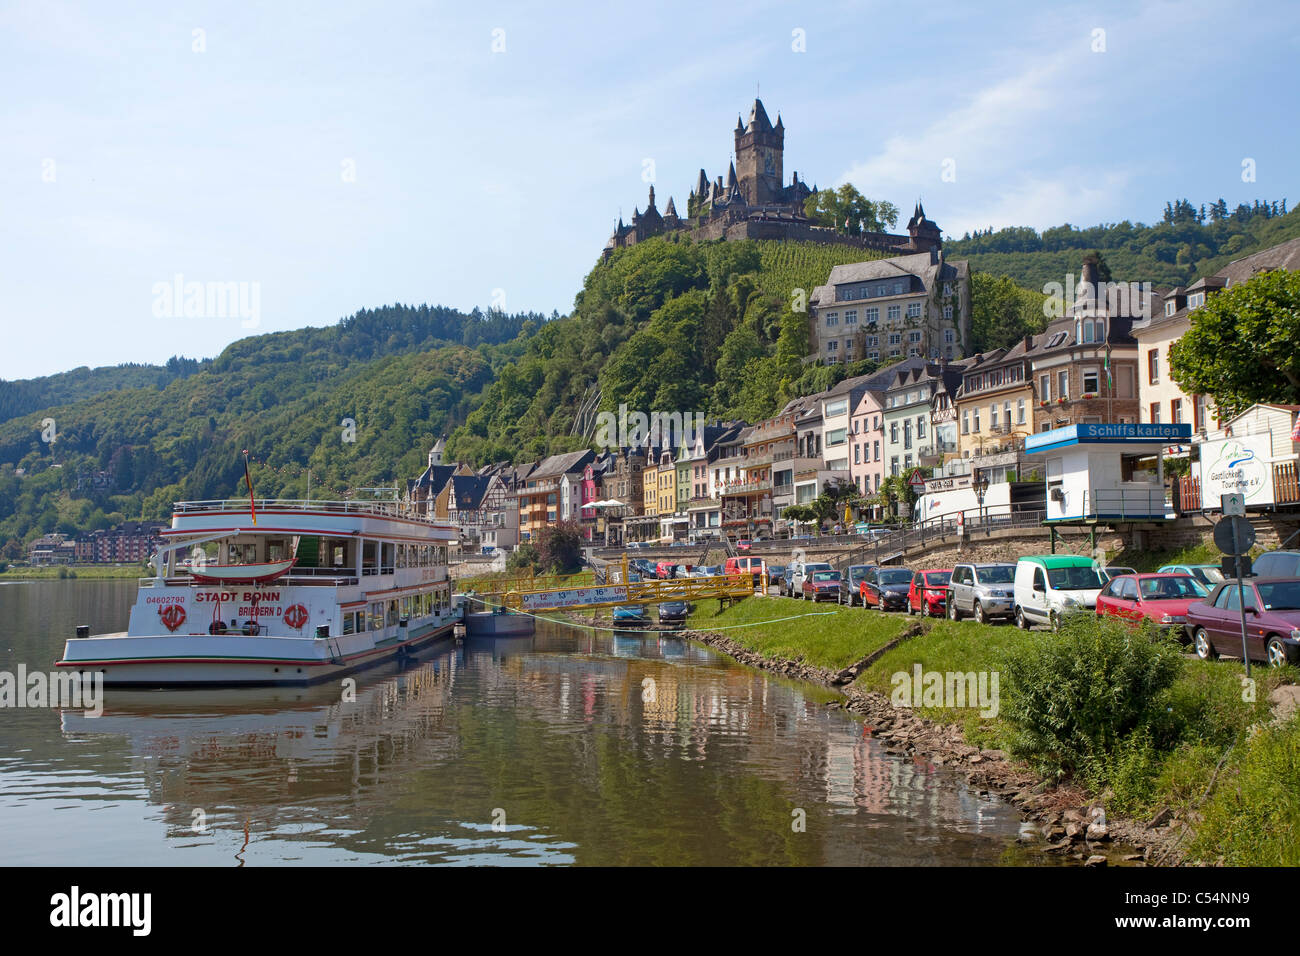 Touristenboot, Besichtigung von Schloss Cochem, Mosel, Mosel, Rheinland-Pfalz, Deutschland, Europa Stockfoto